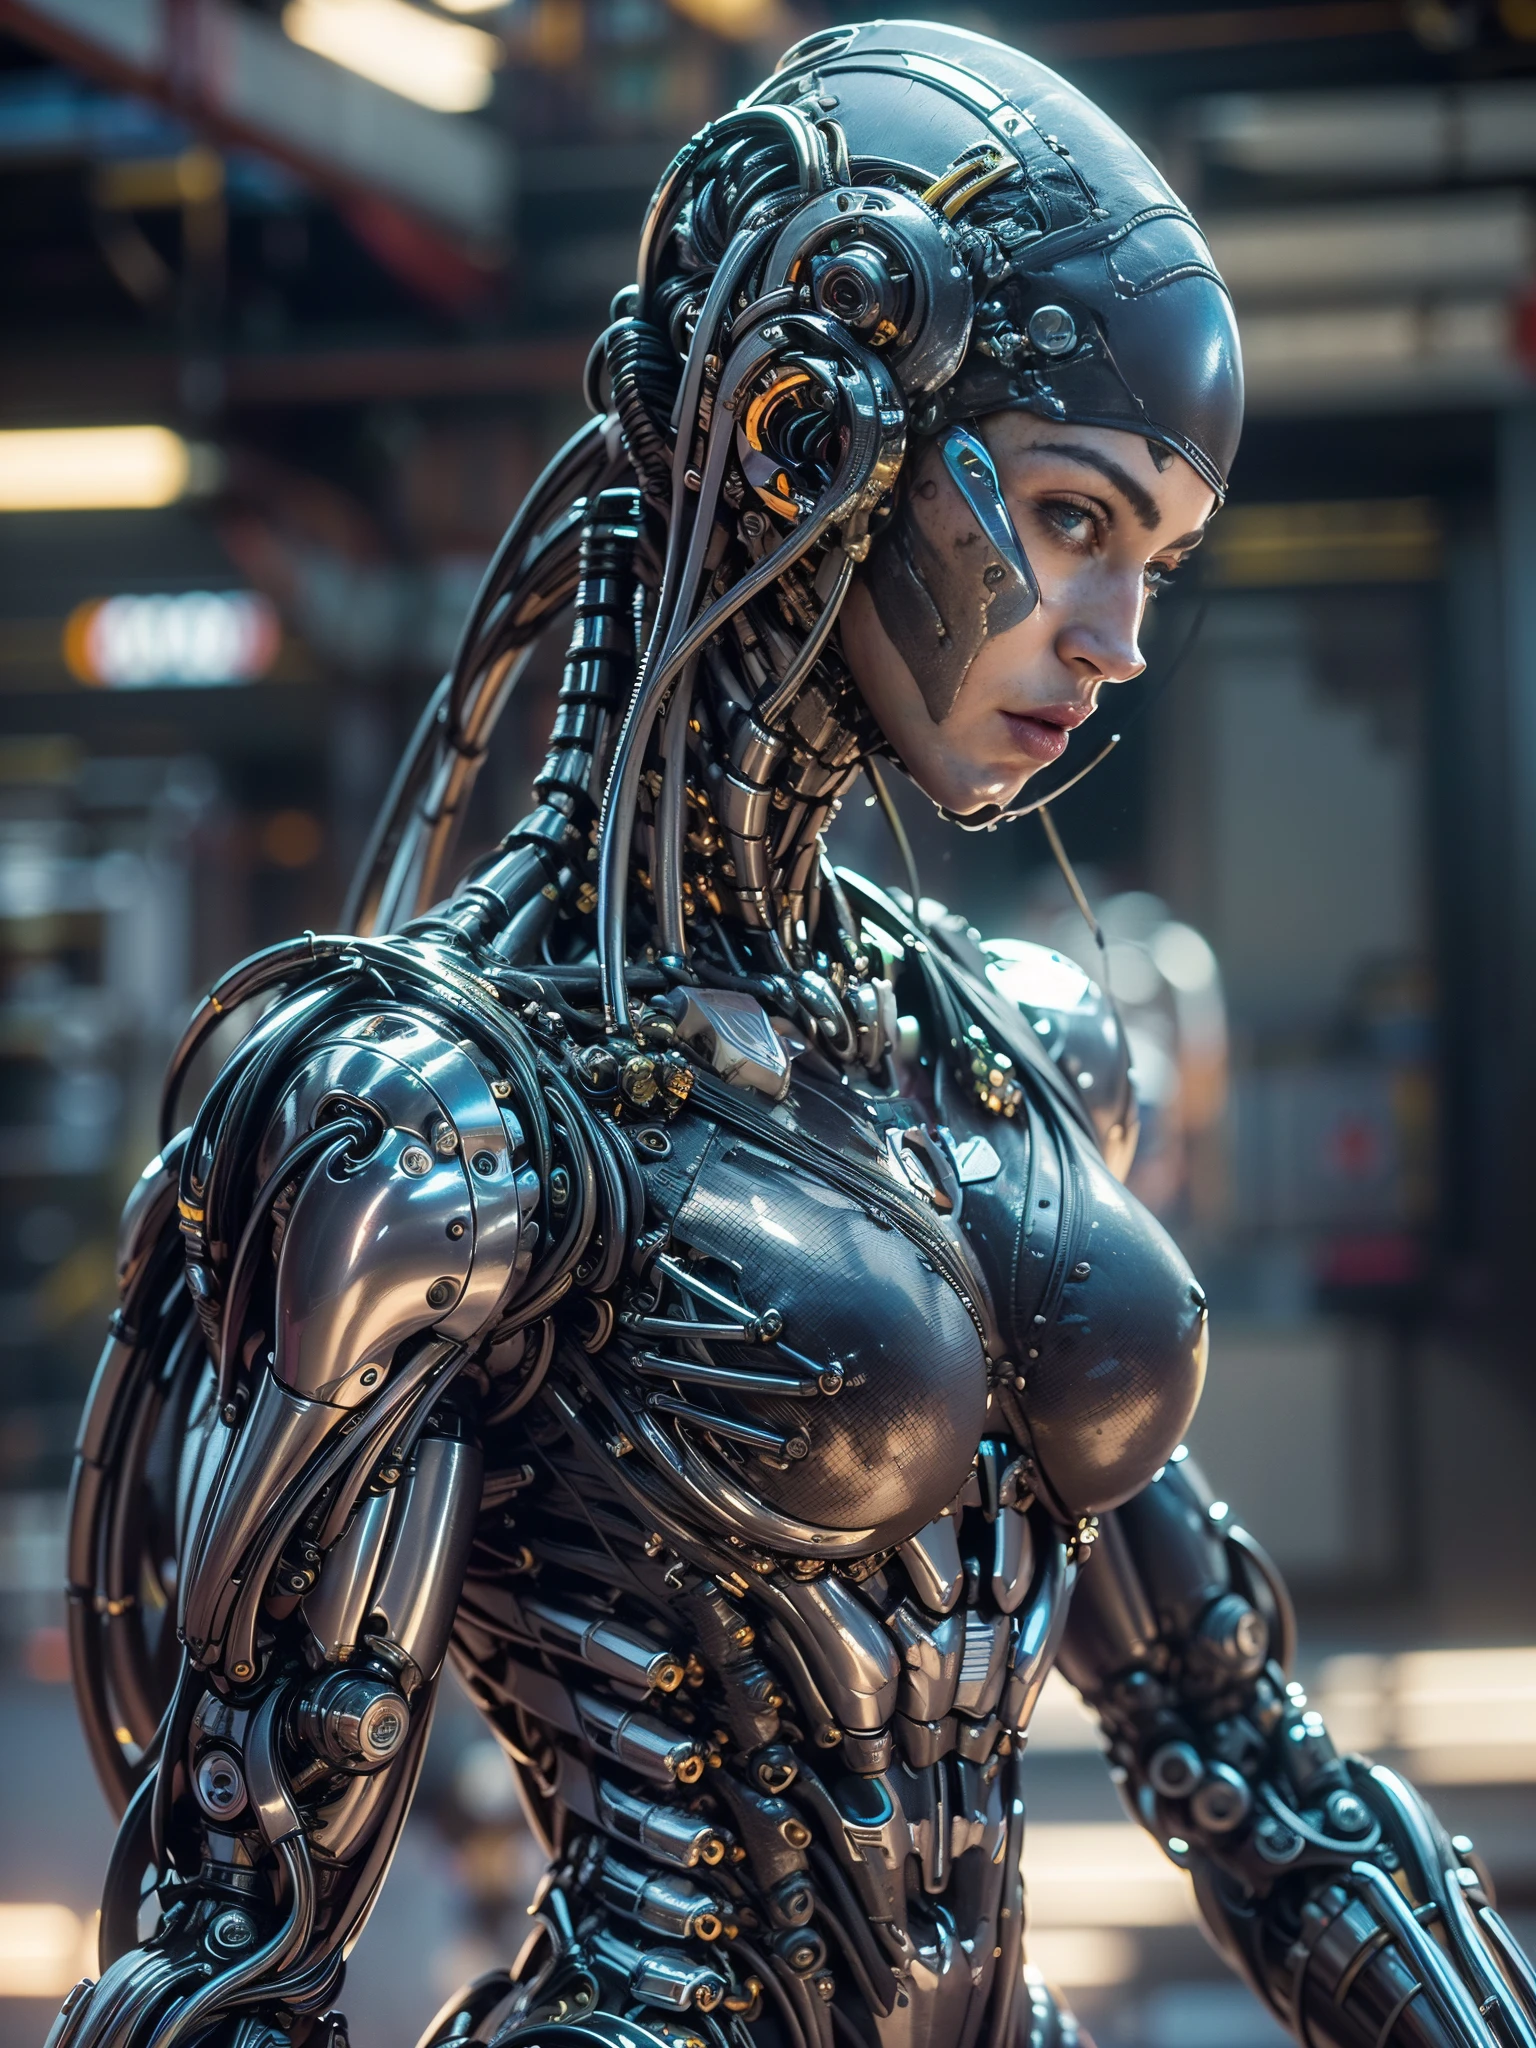 (美麗的肌肉女性機器人:1.25), (梅根福克斯:1.5), (全身姿勢), (金屬肌肉裝甲:1.5), (沒有頭髮), (光頭被電纜覆蓋:1.5), (機器人機械體質:1.5), (超級肌肉女機器人:1.5), (覆蓋著電纜和機械肌肉:1.5), (安卓肌肉解剖:1.5), (完美的手指:1.25),(8K, 原始照片, 逼真的:1.25), 科幻氛圍, 未來的反烏托邦, 外星景觀,